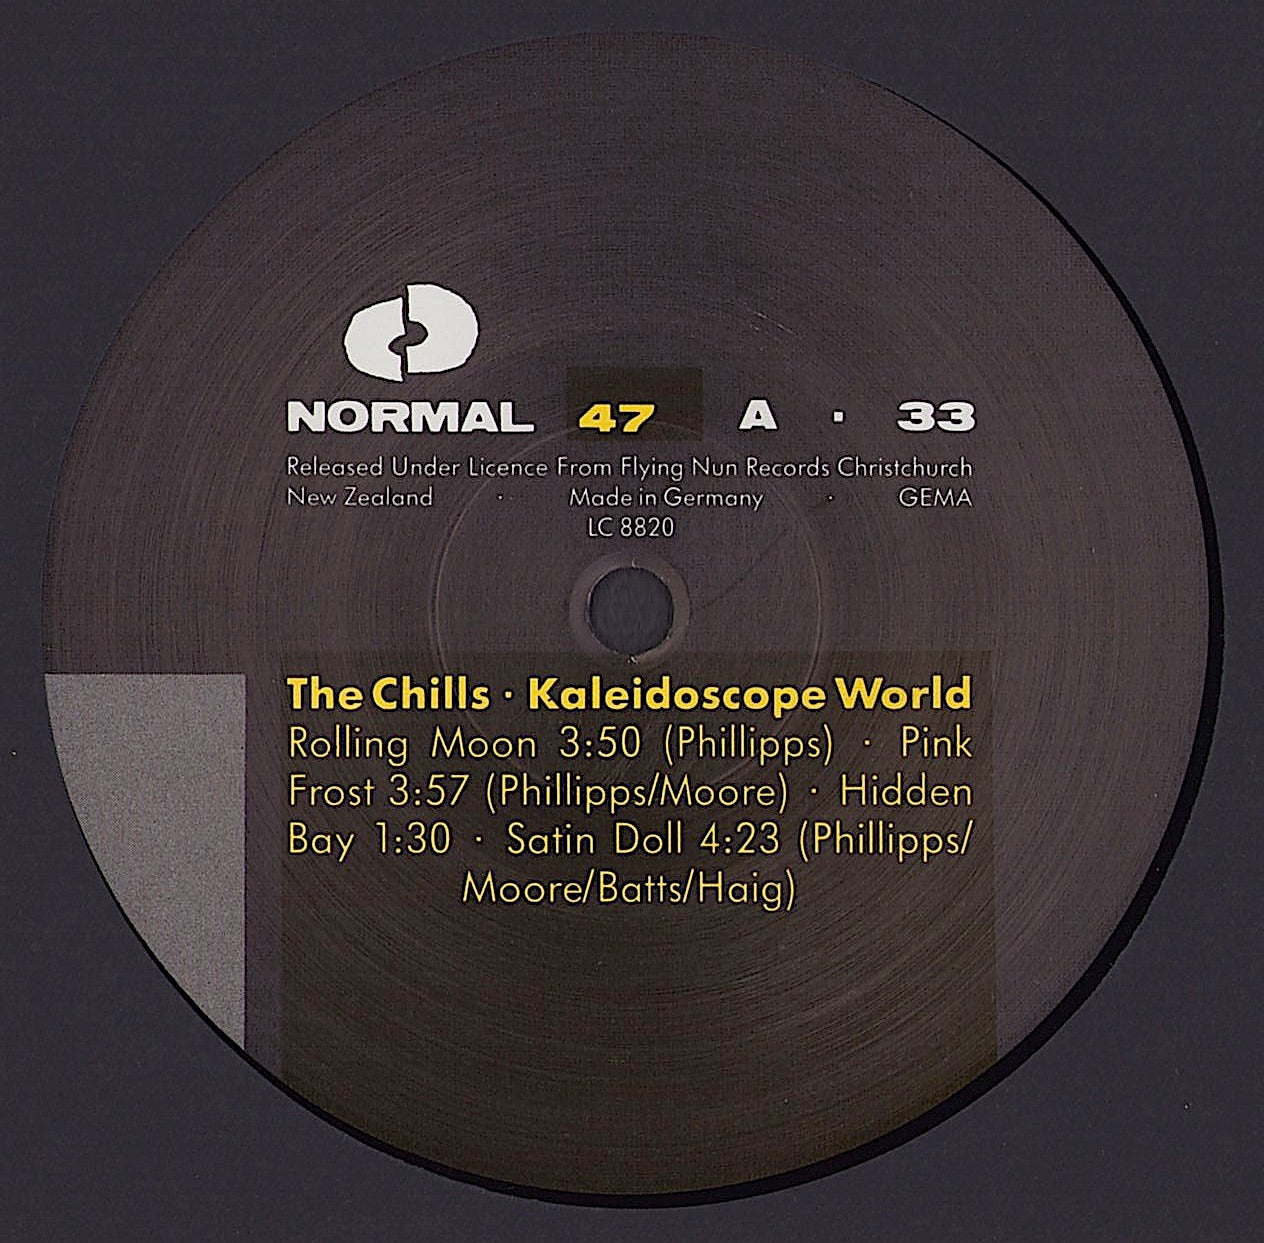 The Chills - Kaleidoscope World Vinyl LP + 7" Single